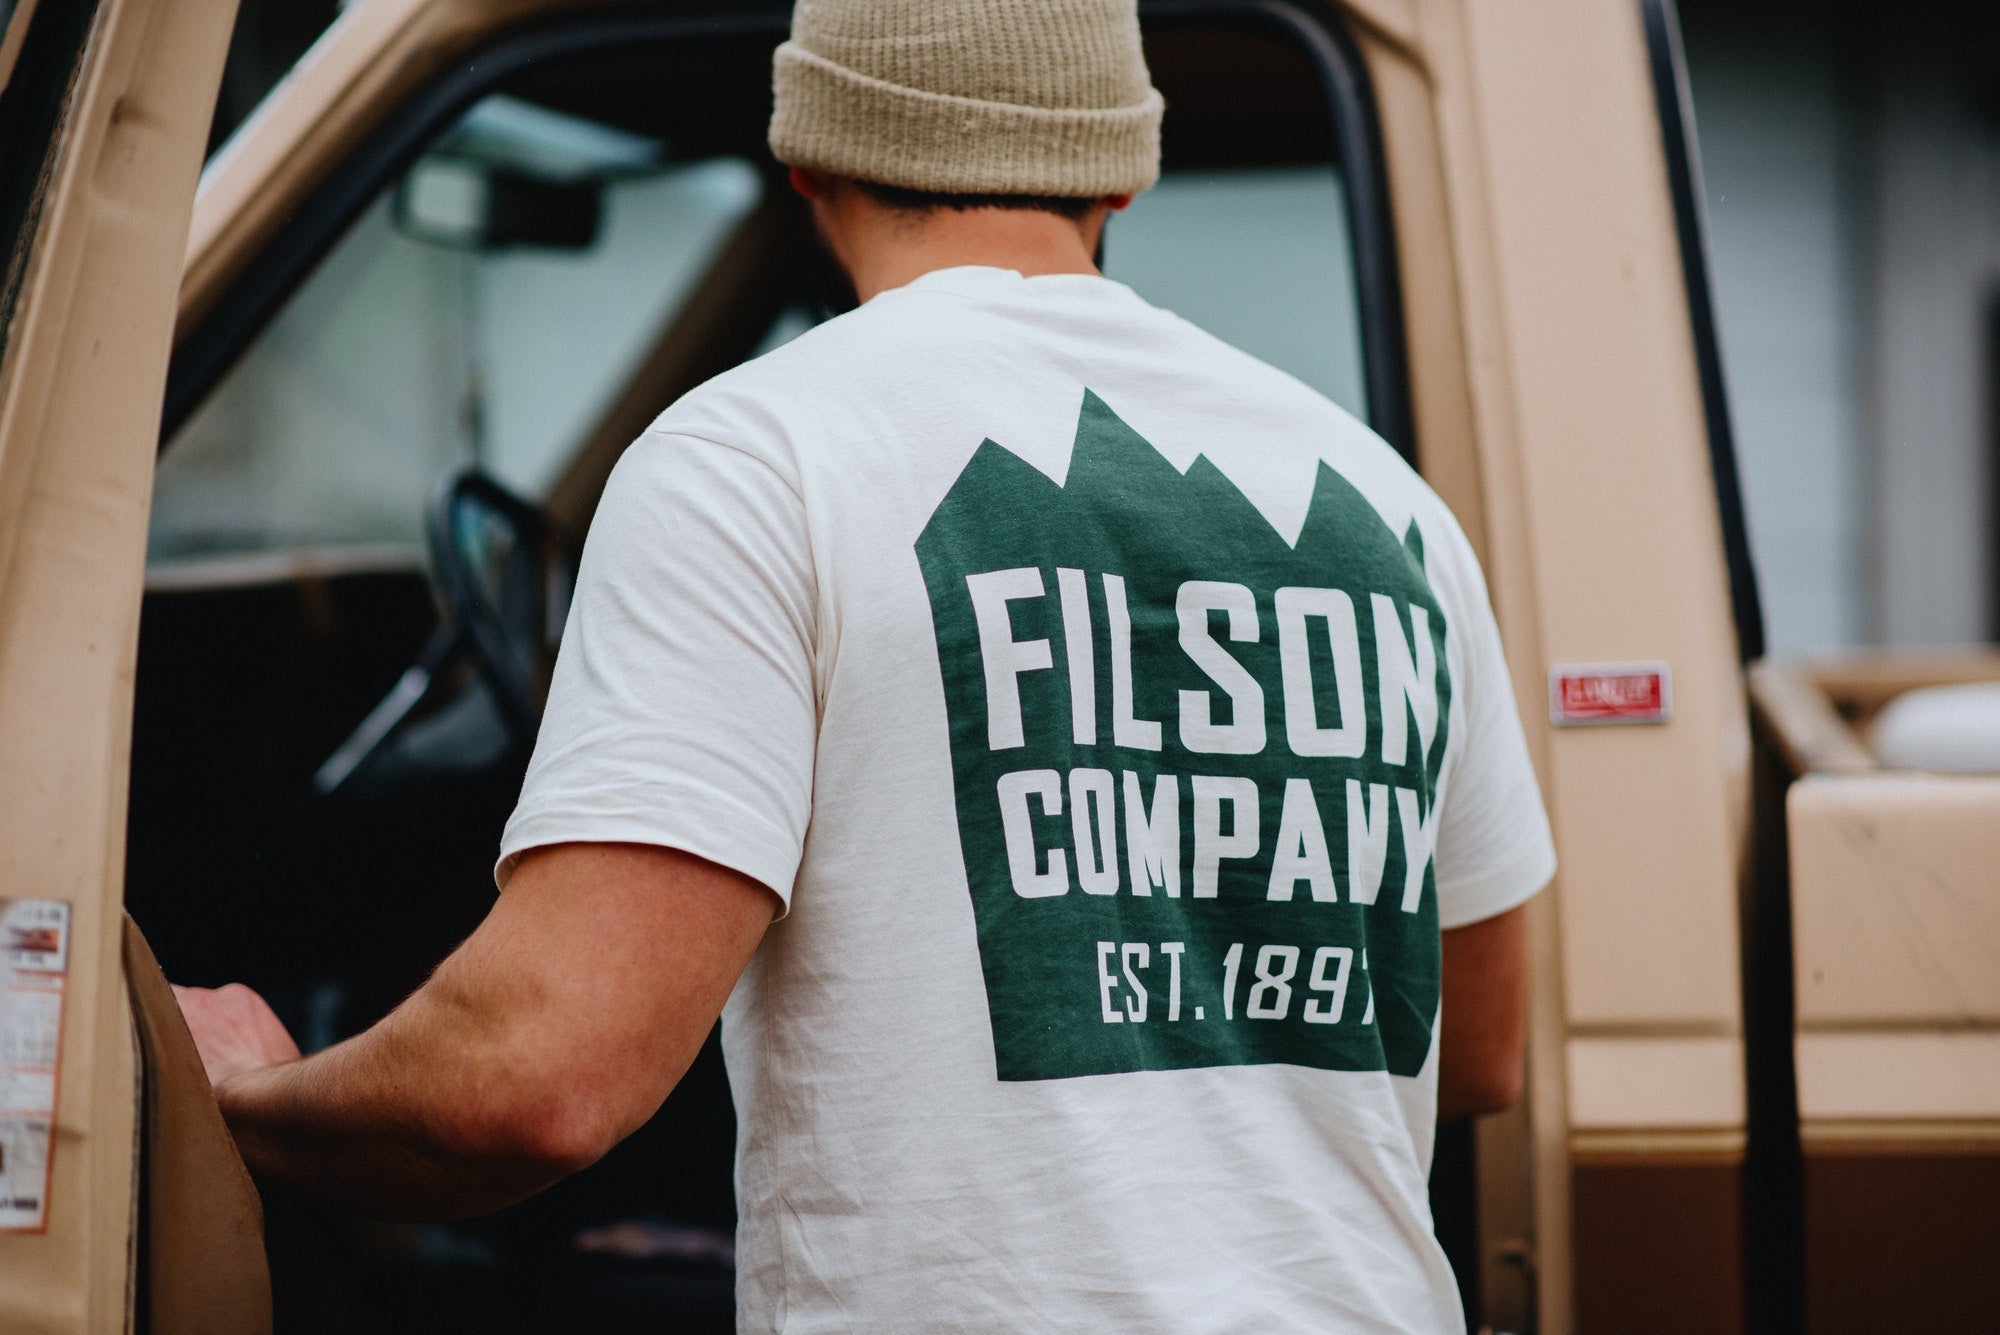 20205643 Filson Short Sleeve Ranger Graphic T-Shirt Off White